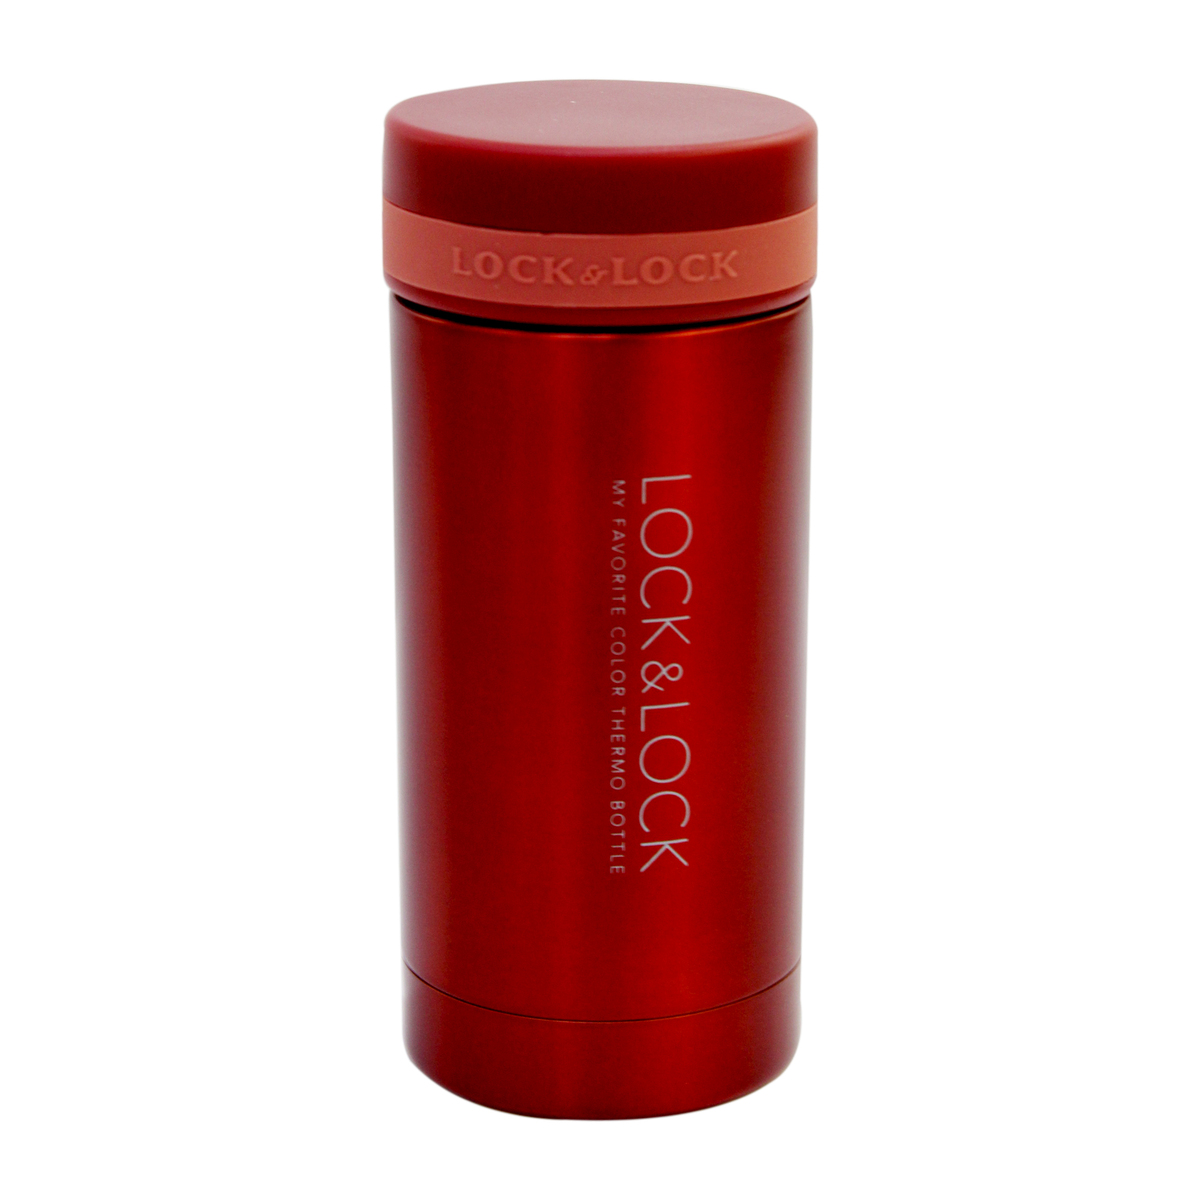 Lockandlock Termos Merah Mini 200ml Lhc550 Flasks Lulu Indonesia 5770